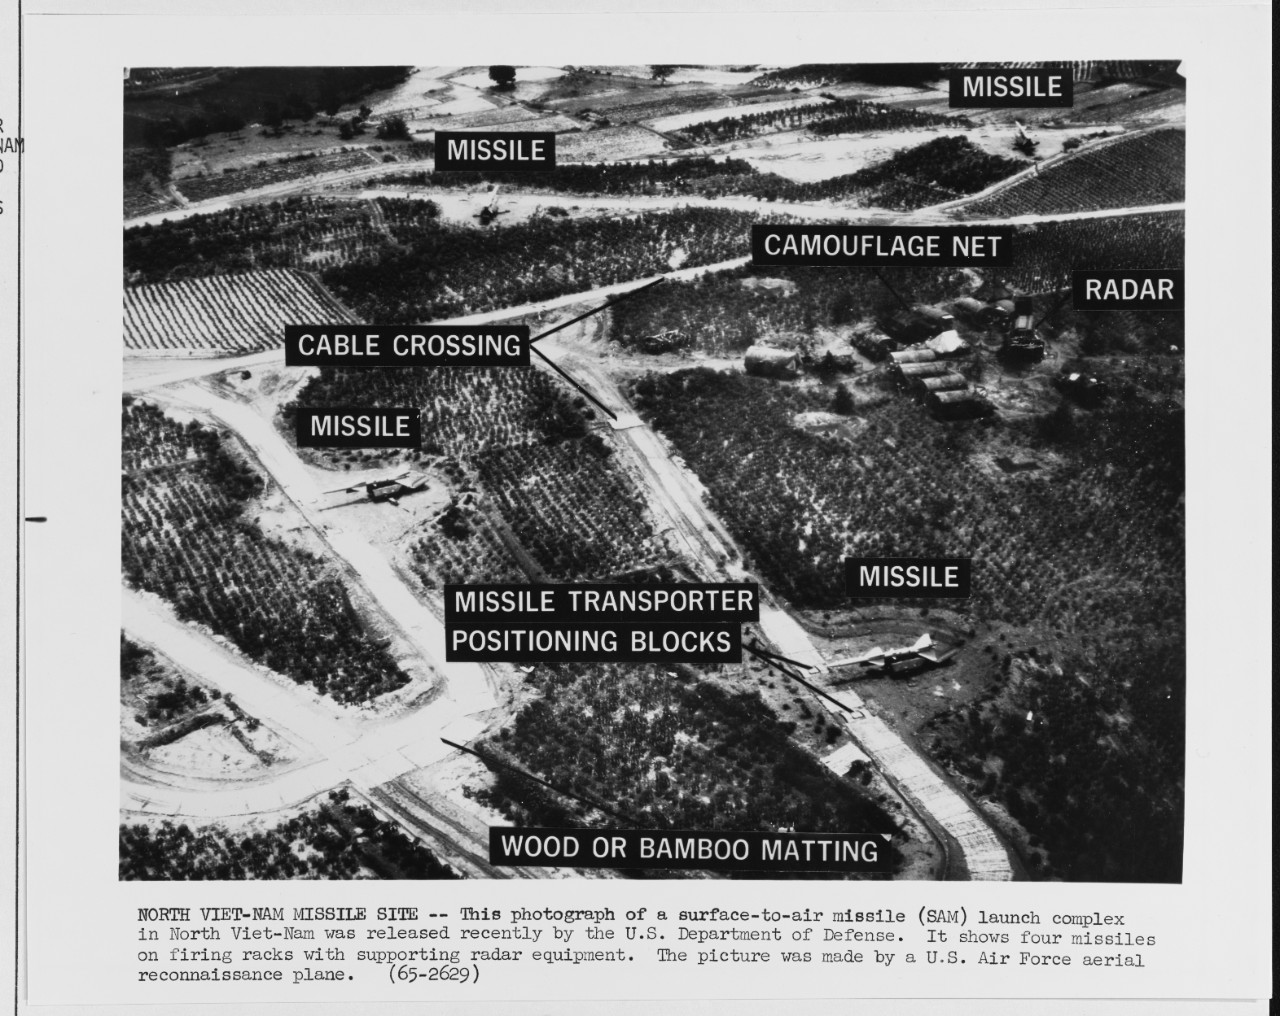 North Vietnam Missile Site